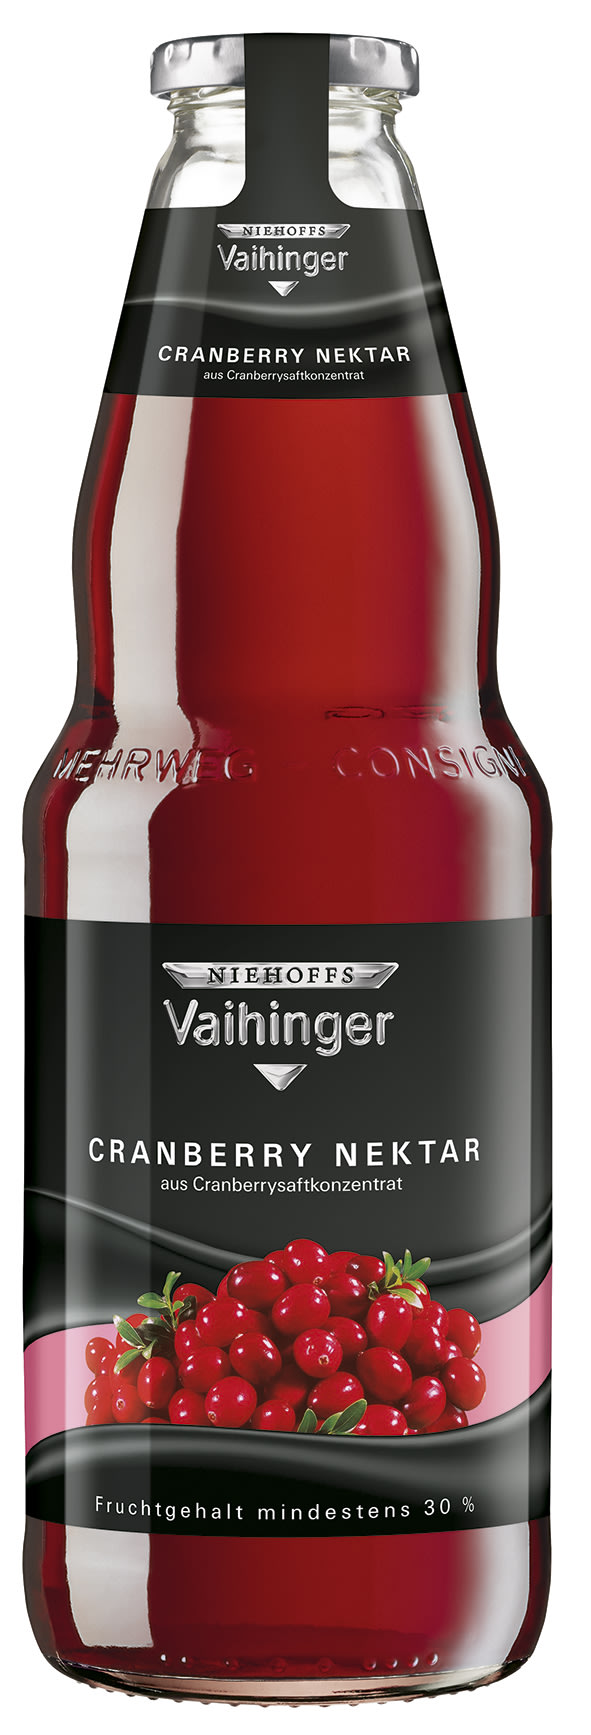 Niehoffs Vaihinger Cranberry Nektar Kasten 6 x 1 l Glas Mehrweg